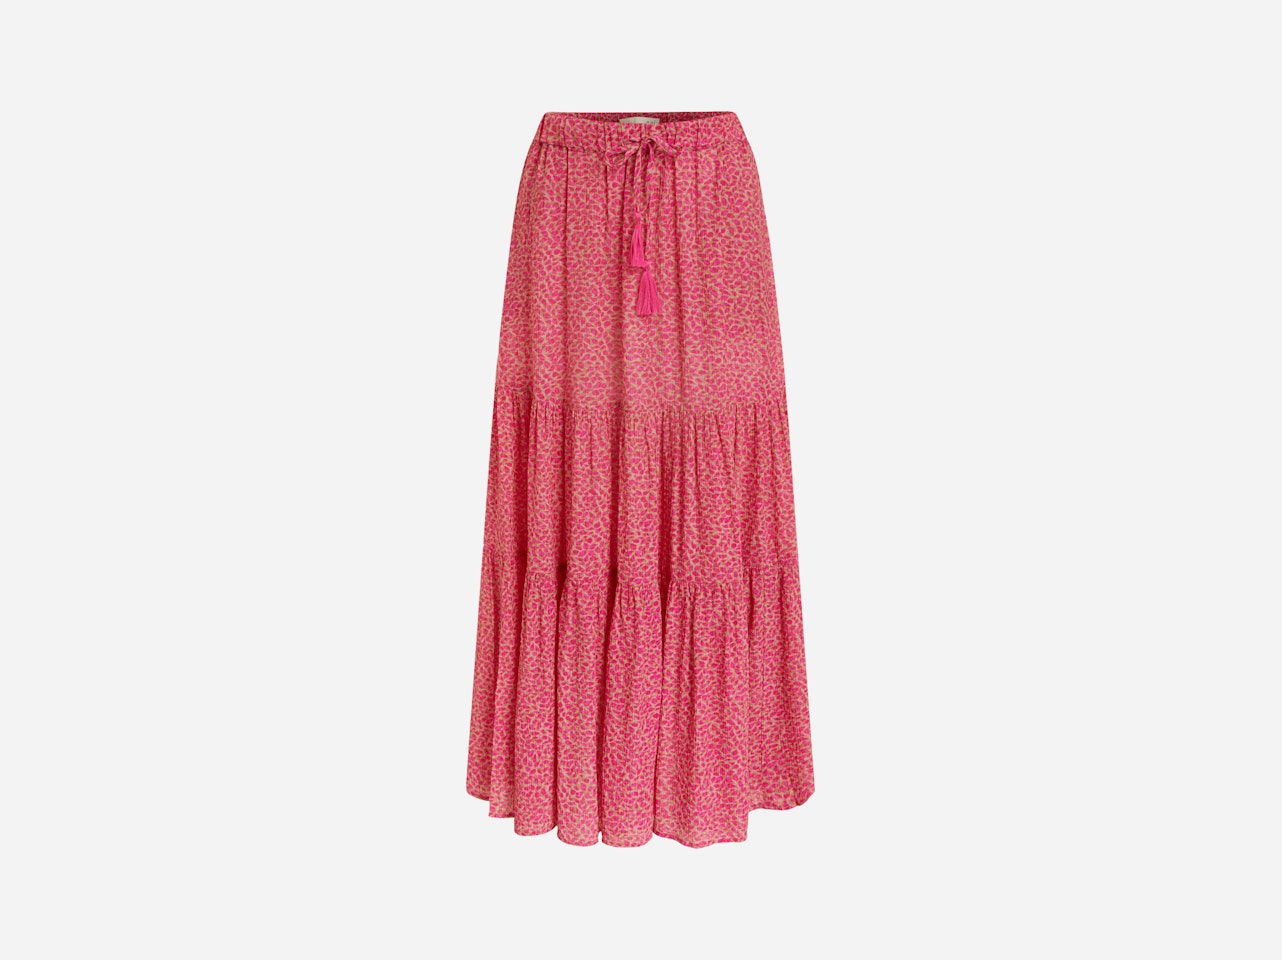 Bild 7 von Maxi skirt in minimal print in lt stone red | Oui